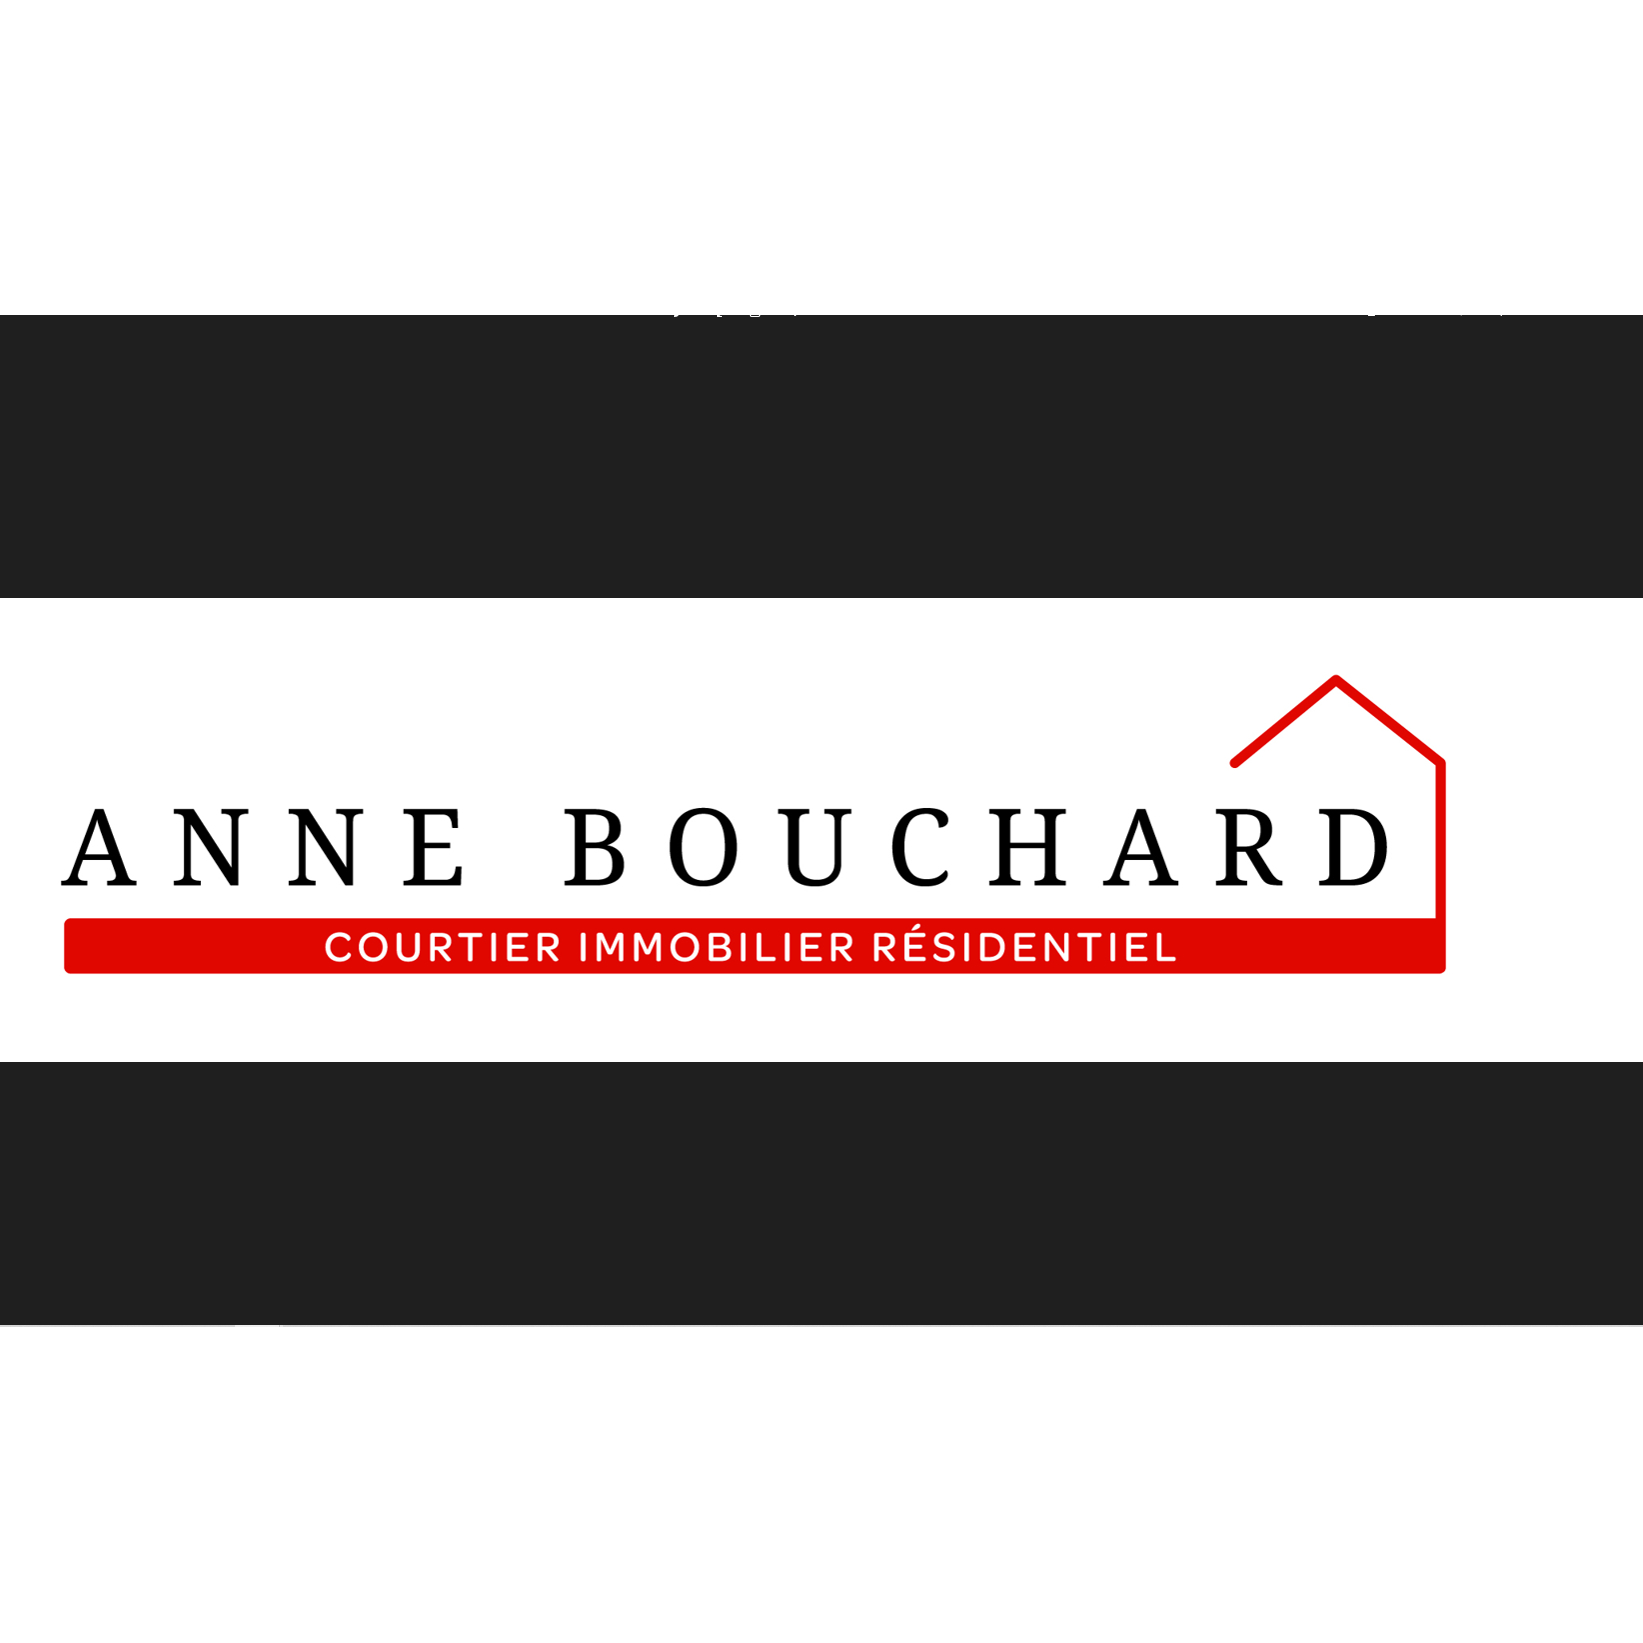 View Anne Bouchard Courtier Immobilier Résidentiel’s Saint-Antoine-de-Tilly profile